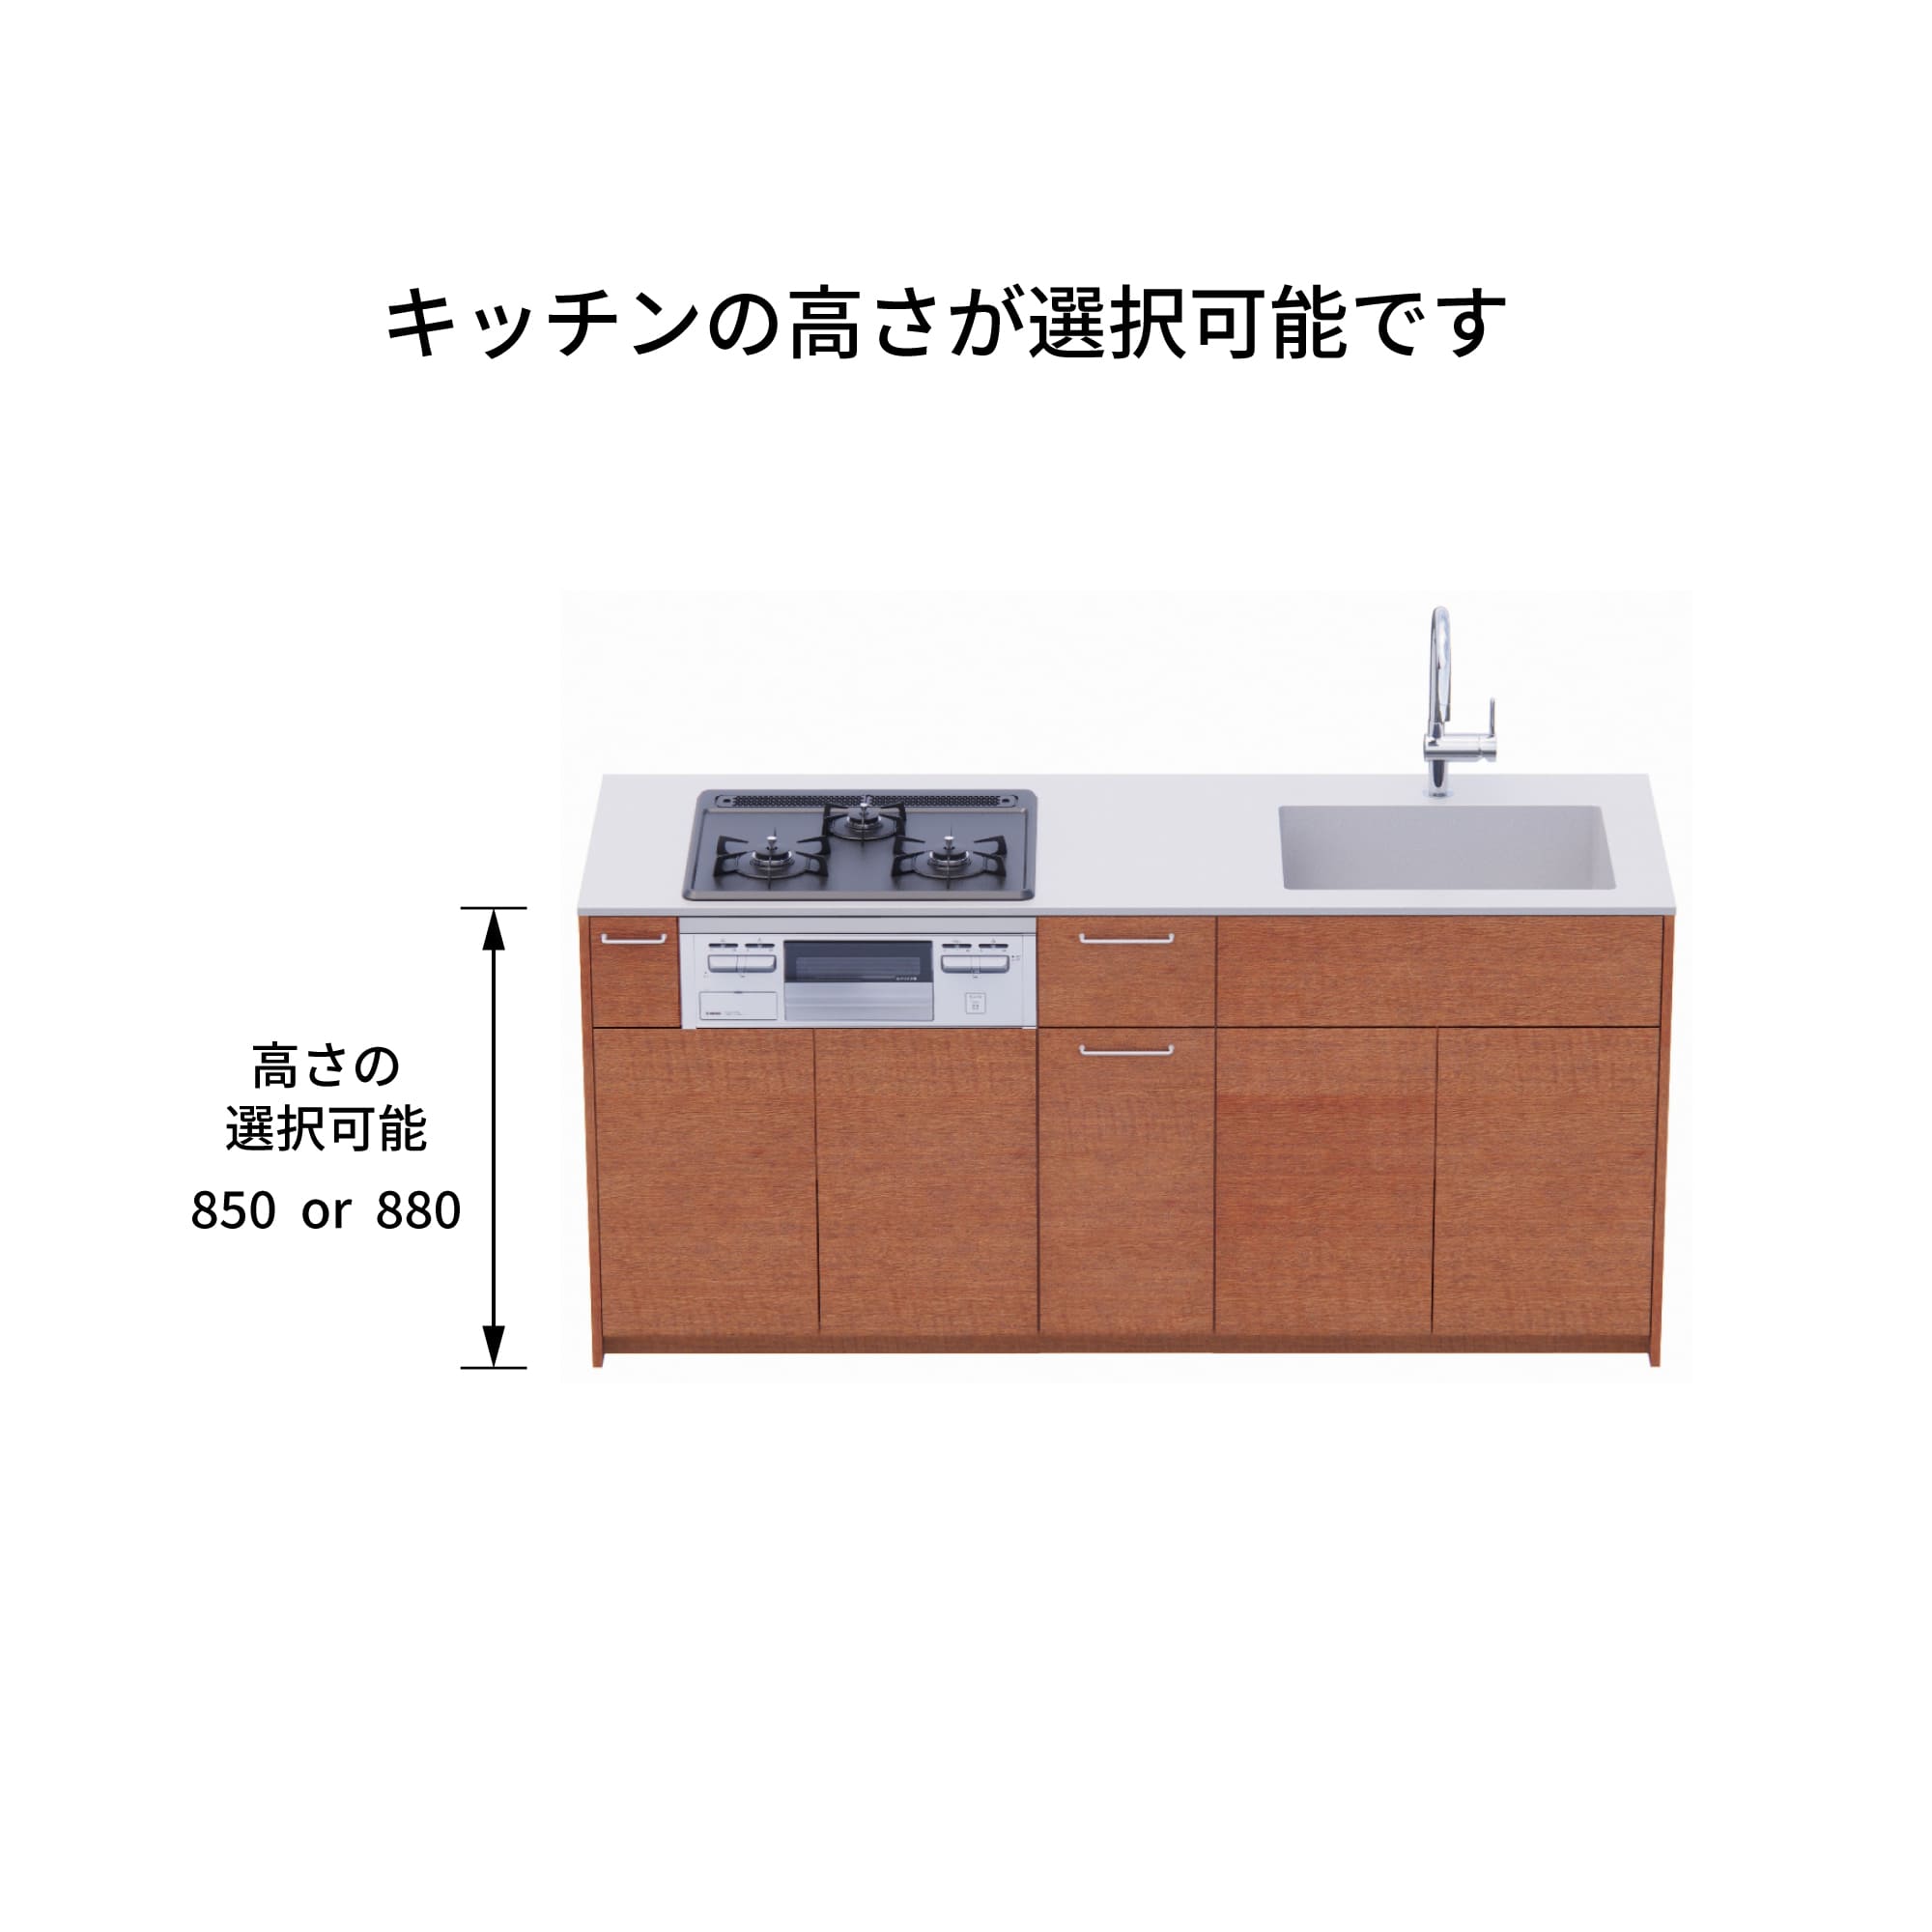 木製システムキッチン 対面型 W1990・コンロあり / オーブンなし / 食洗機なし KB-KC022-31-G183 キッチン高さを選択できます